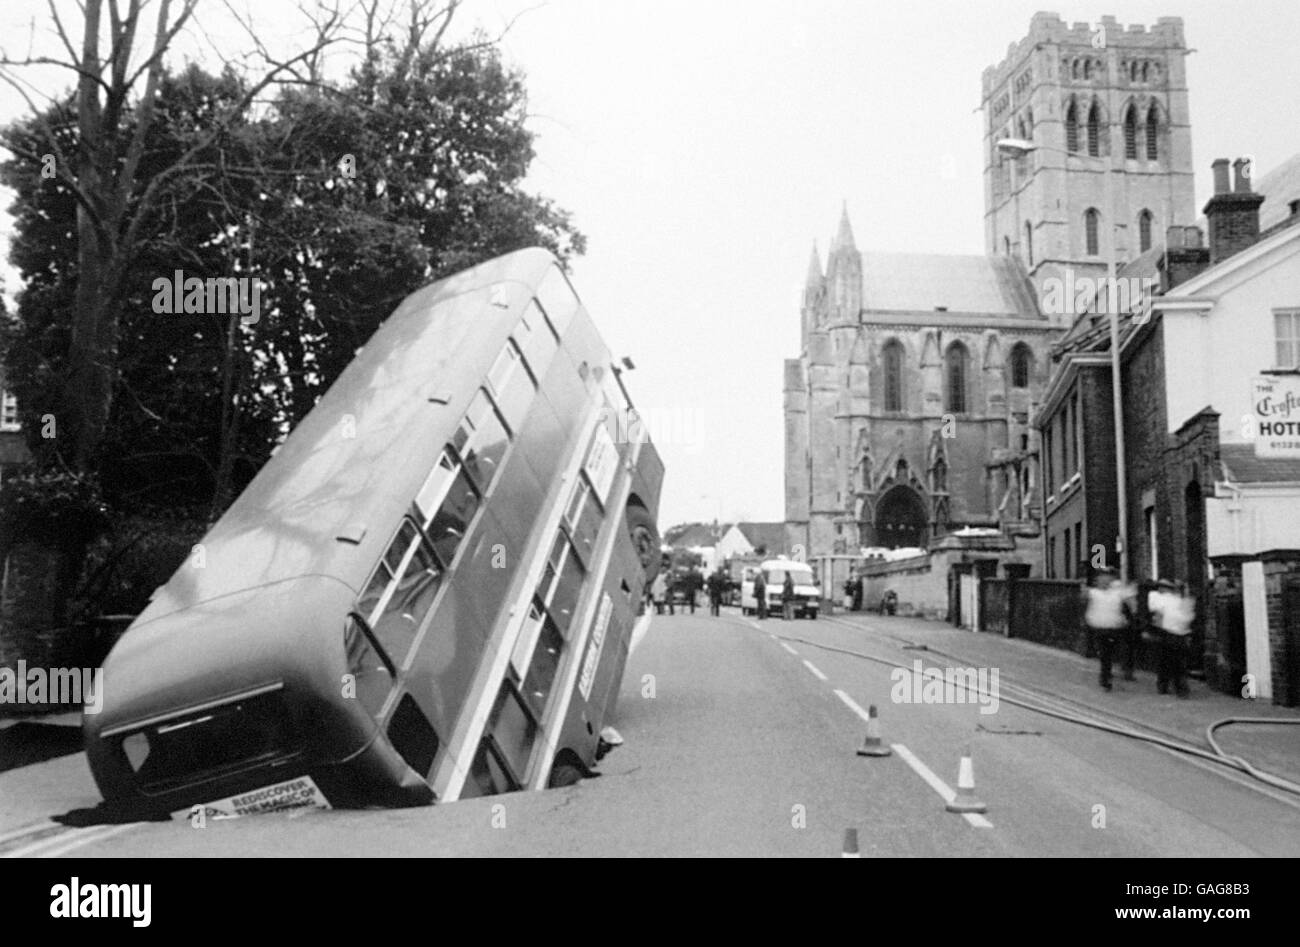 Trasporti - buchi nella strada - Londra - 1983. Un autobus di Londra punta verso il cielo dopo essere passato in un grande buco della strada. Foto Stock